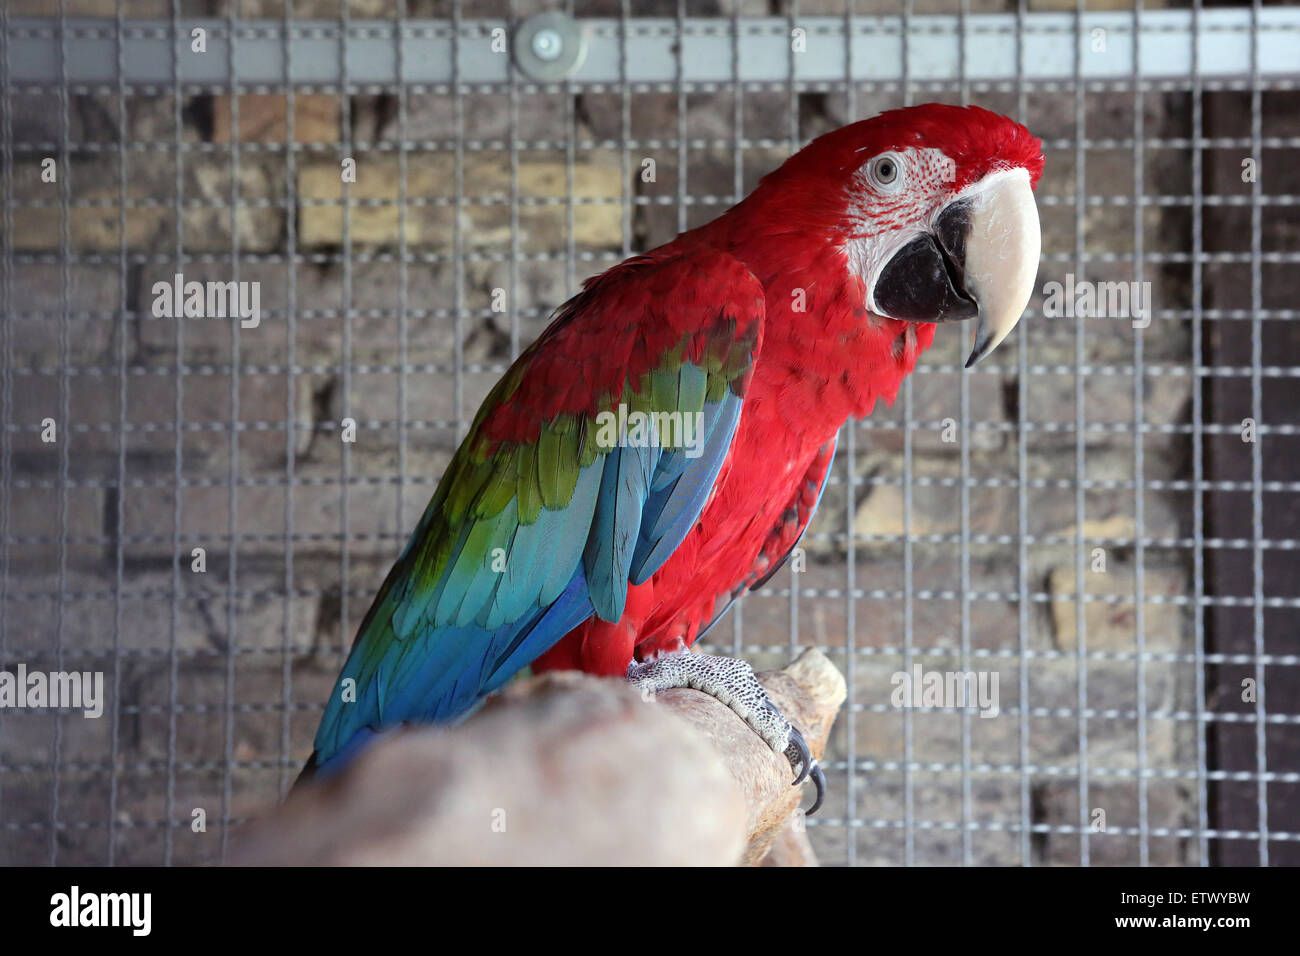 Werl, Allemagne, l'ara rouge est assis dans sa cage Banque D'Images